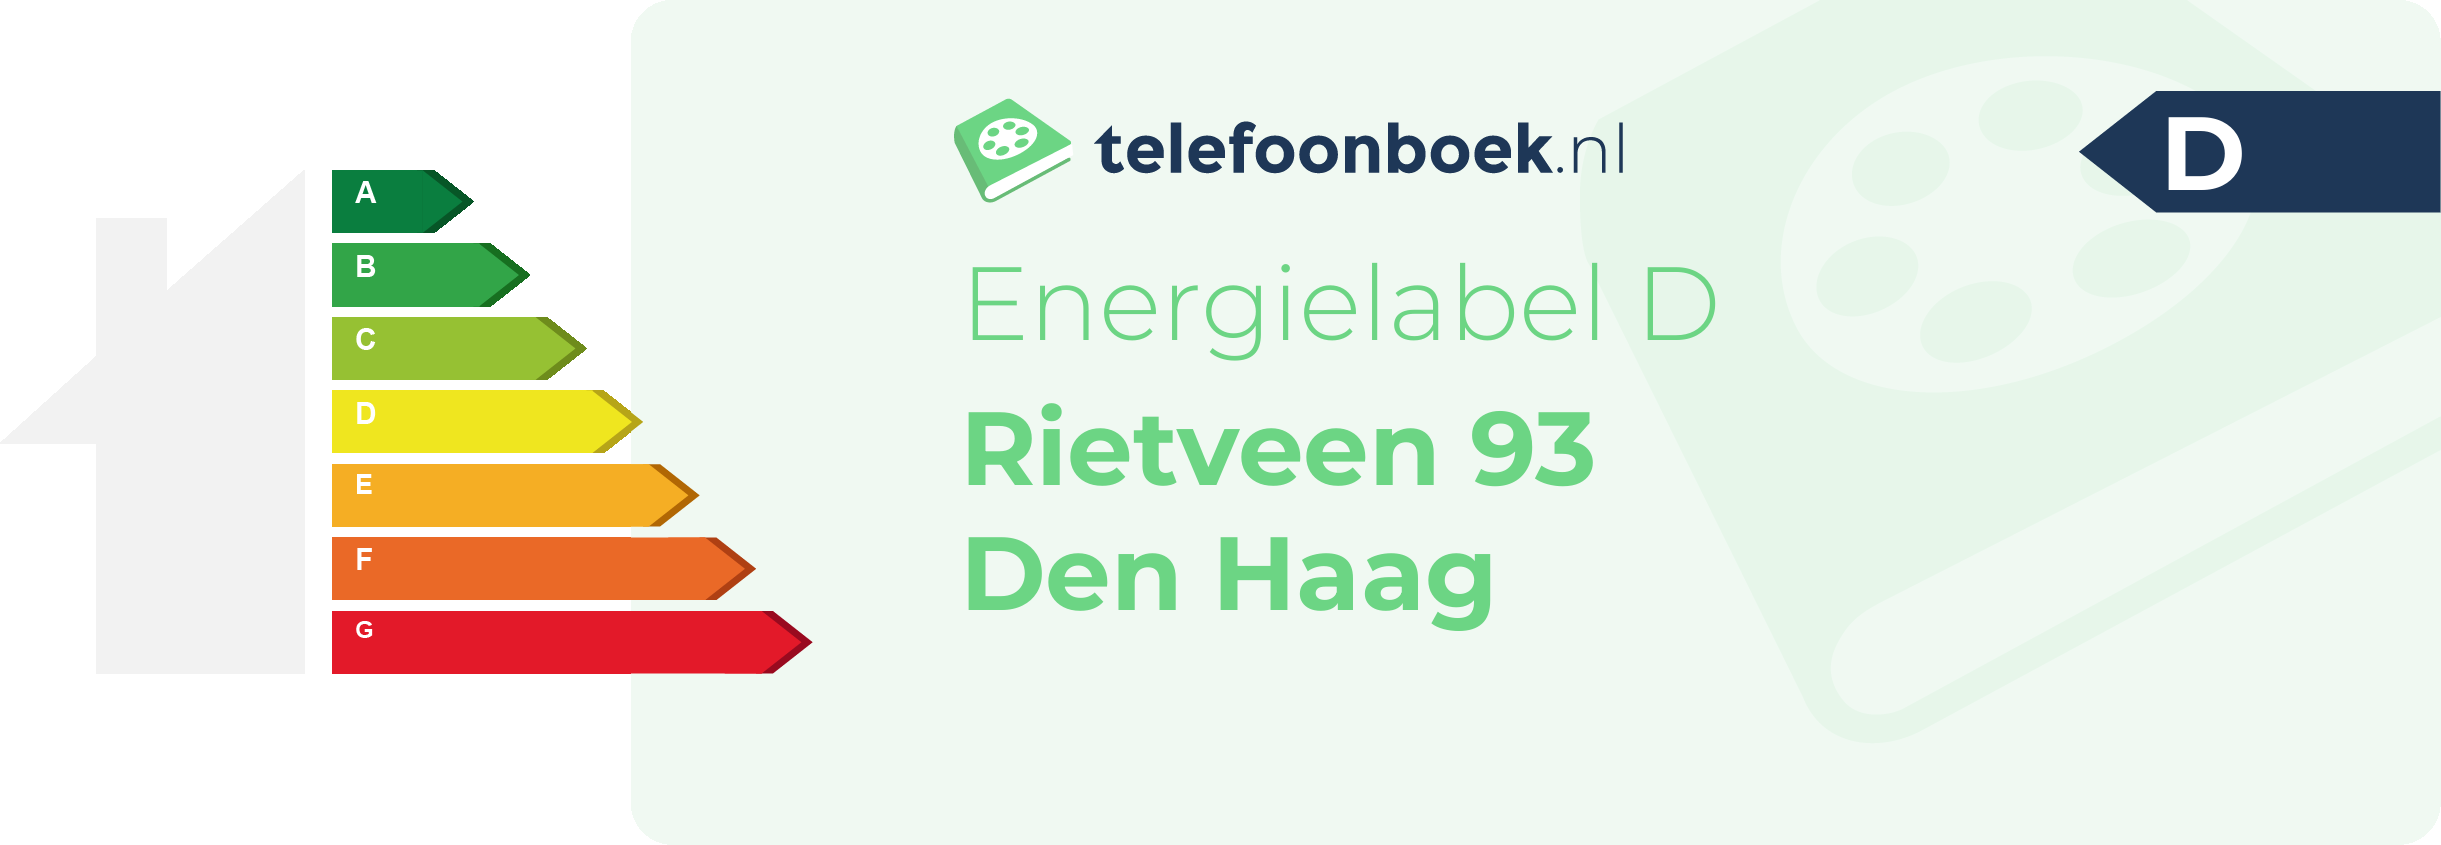 Energielabel Rietveen 93 Den Haag